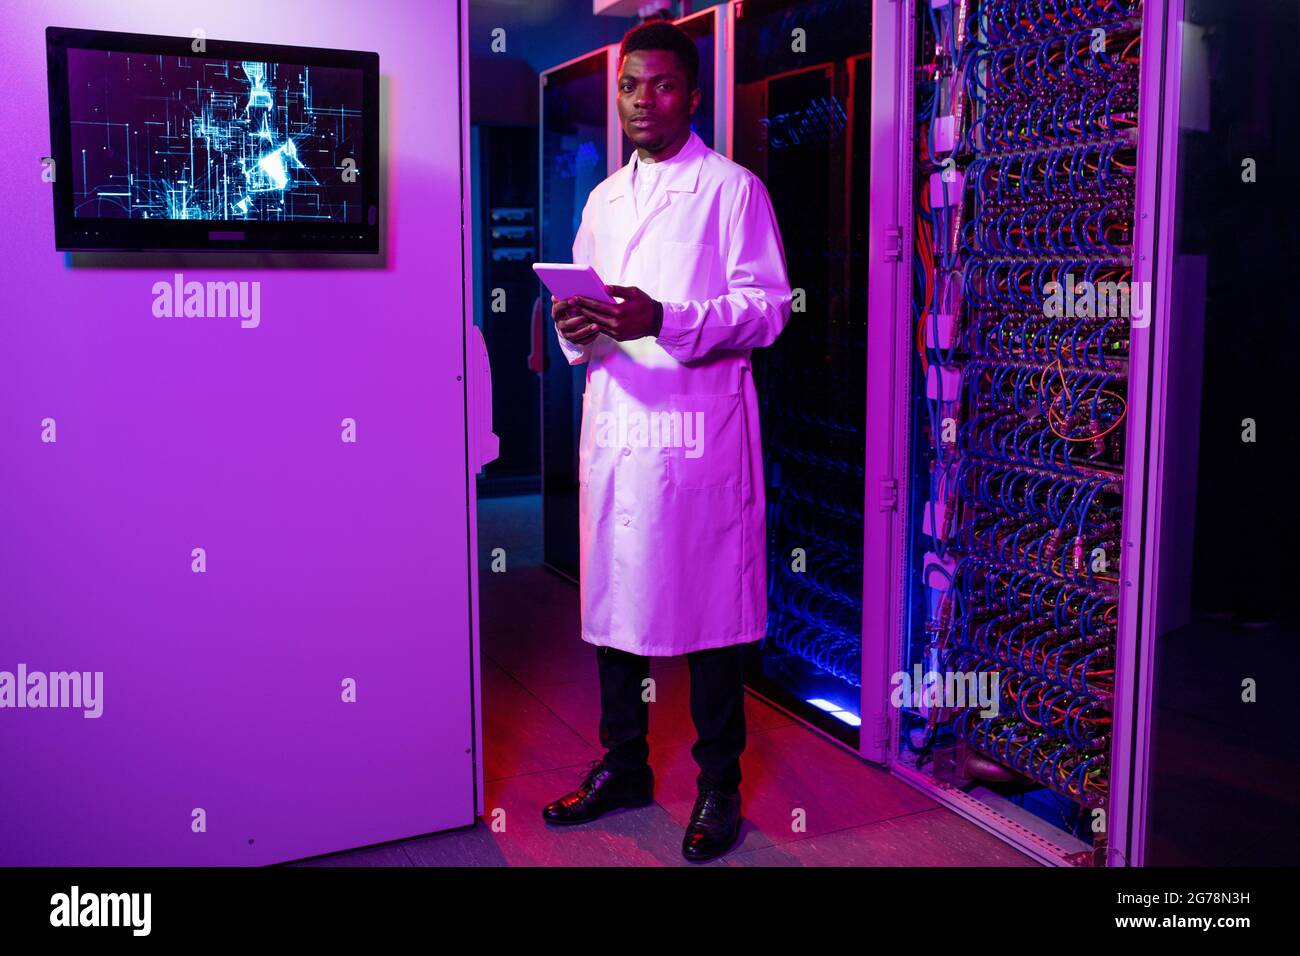 Portrait d'un jeune homme sérieux, afro-américain, administrateur INFORMATIQUE, en manteau blanc, debout avec une tablette dans une pièce au néon foncé avec des armoires Banque D'Images